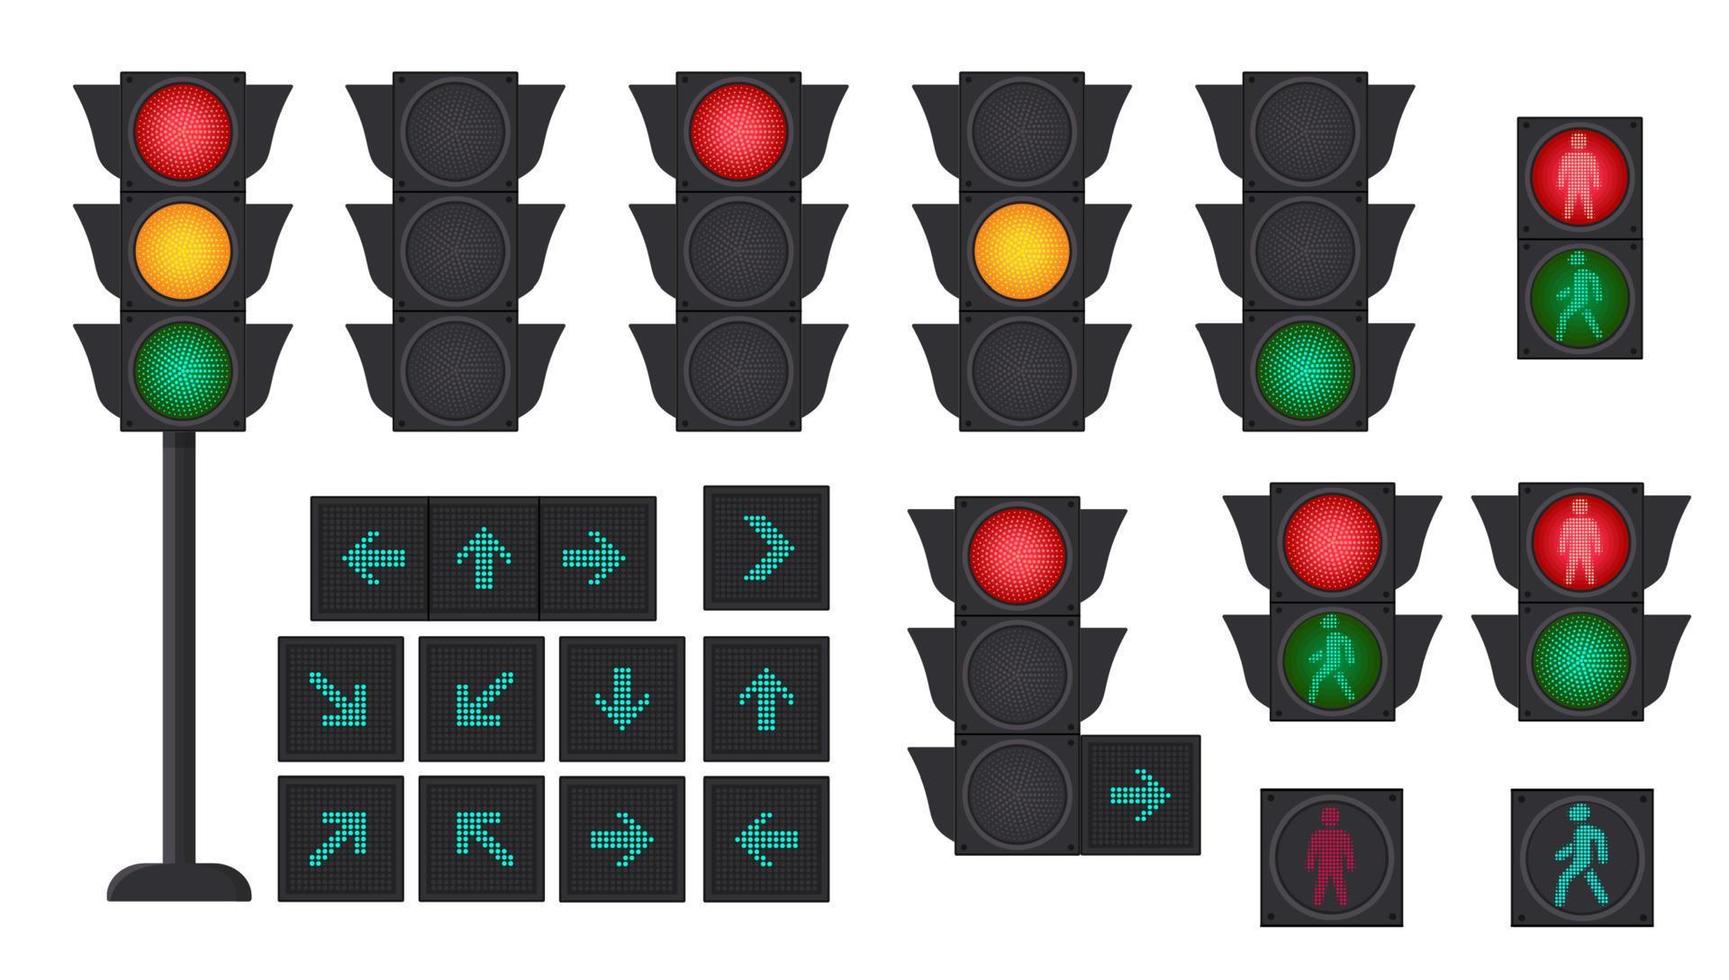 concepto de tráfico con semáforos y señales de tráfico. ilustración vectorial vector